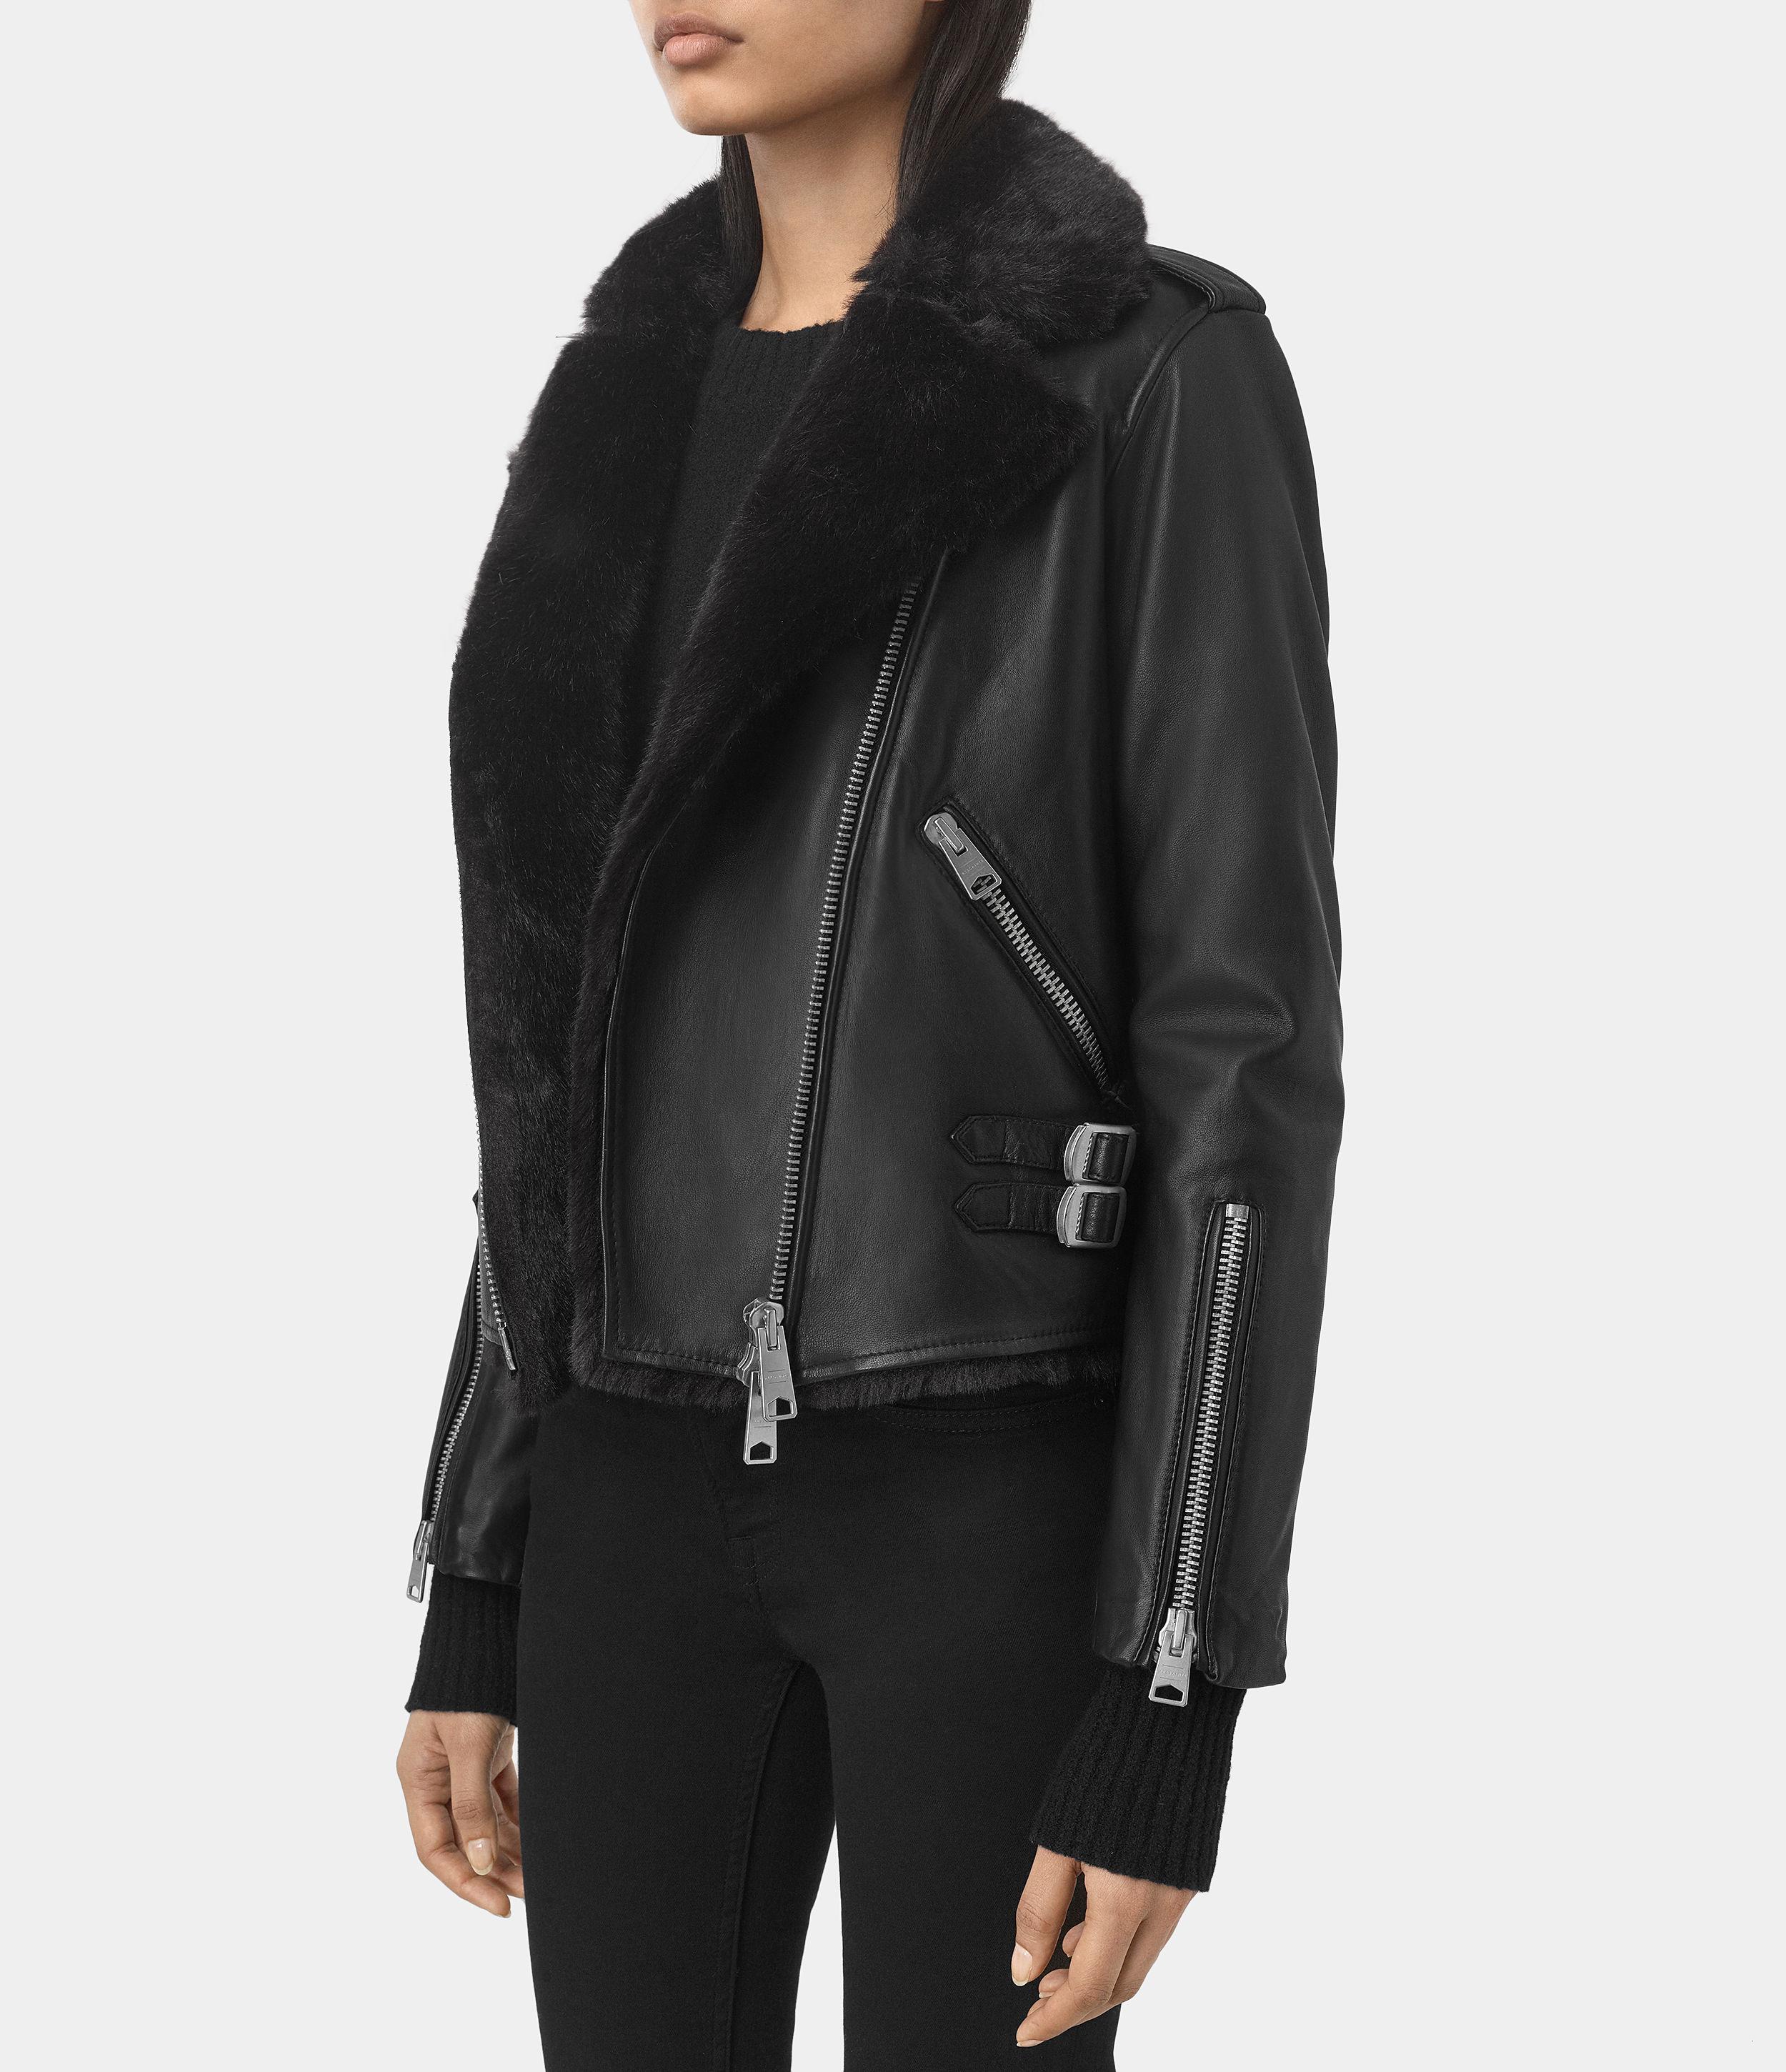 AllSaints Higgens Lux Leather Biker Jacket in Black/Black (Black) - Lyst